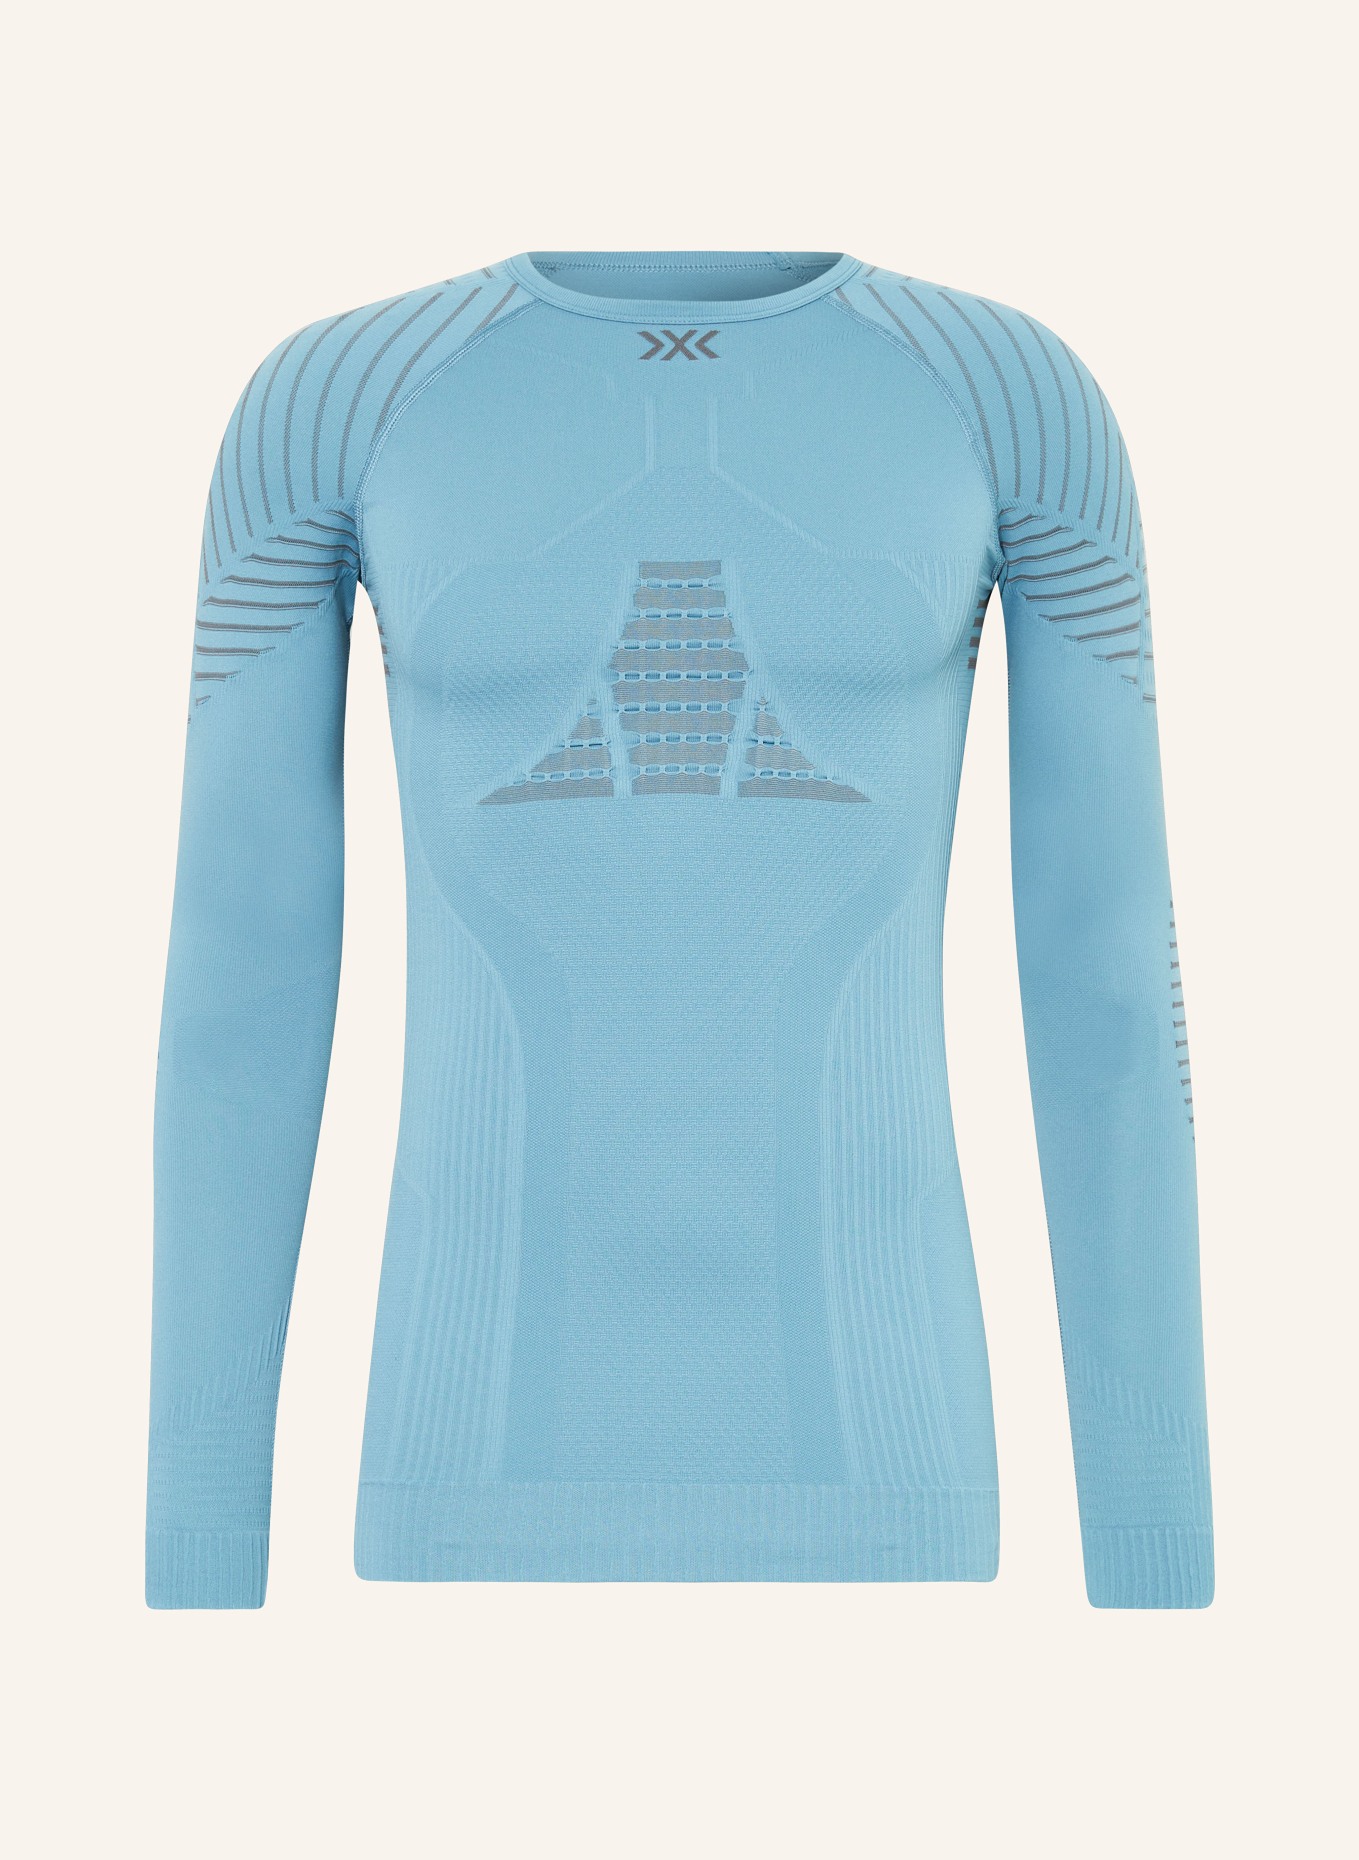 X-BIONIC Funktionswäsche-Shirt X-BIONIC® INVENT 4.0, Farbe: BLAUGRAU (Bild 1)